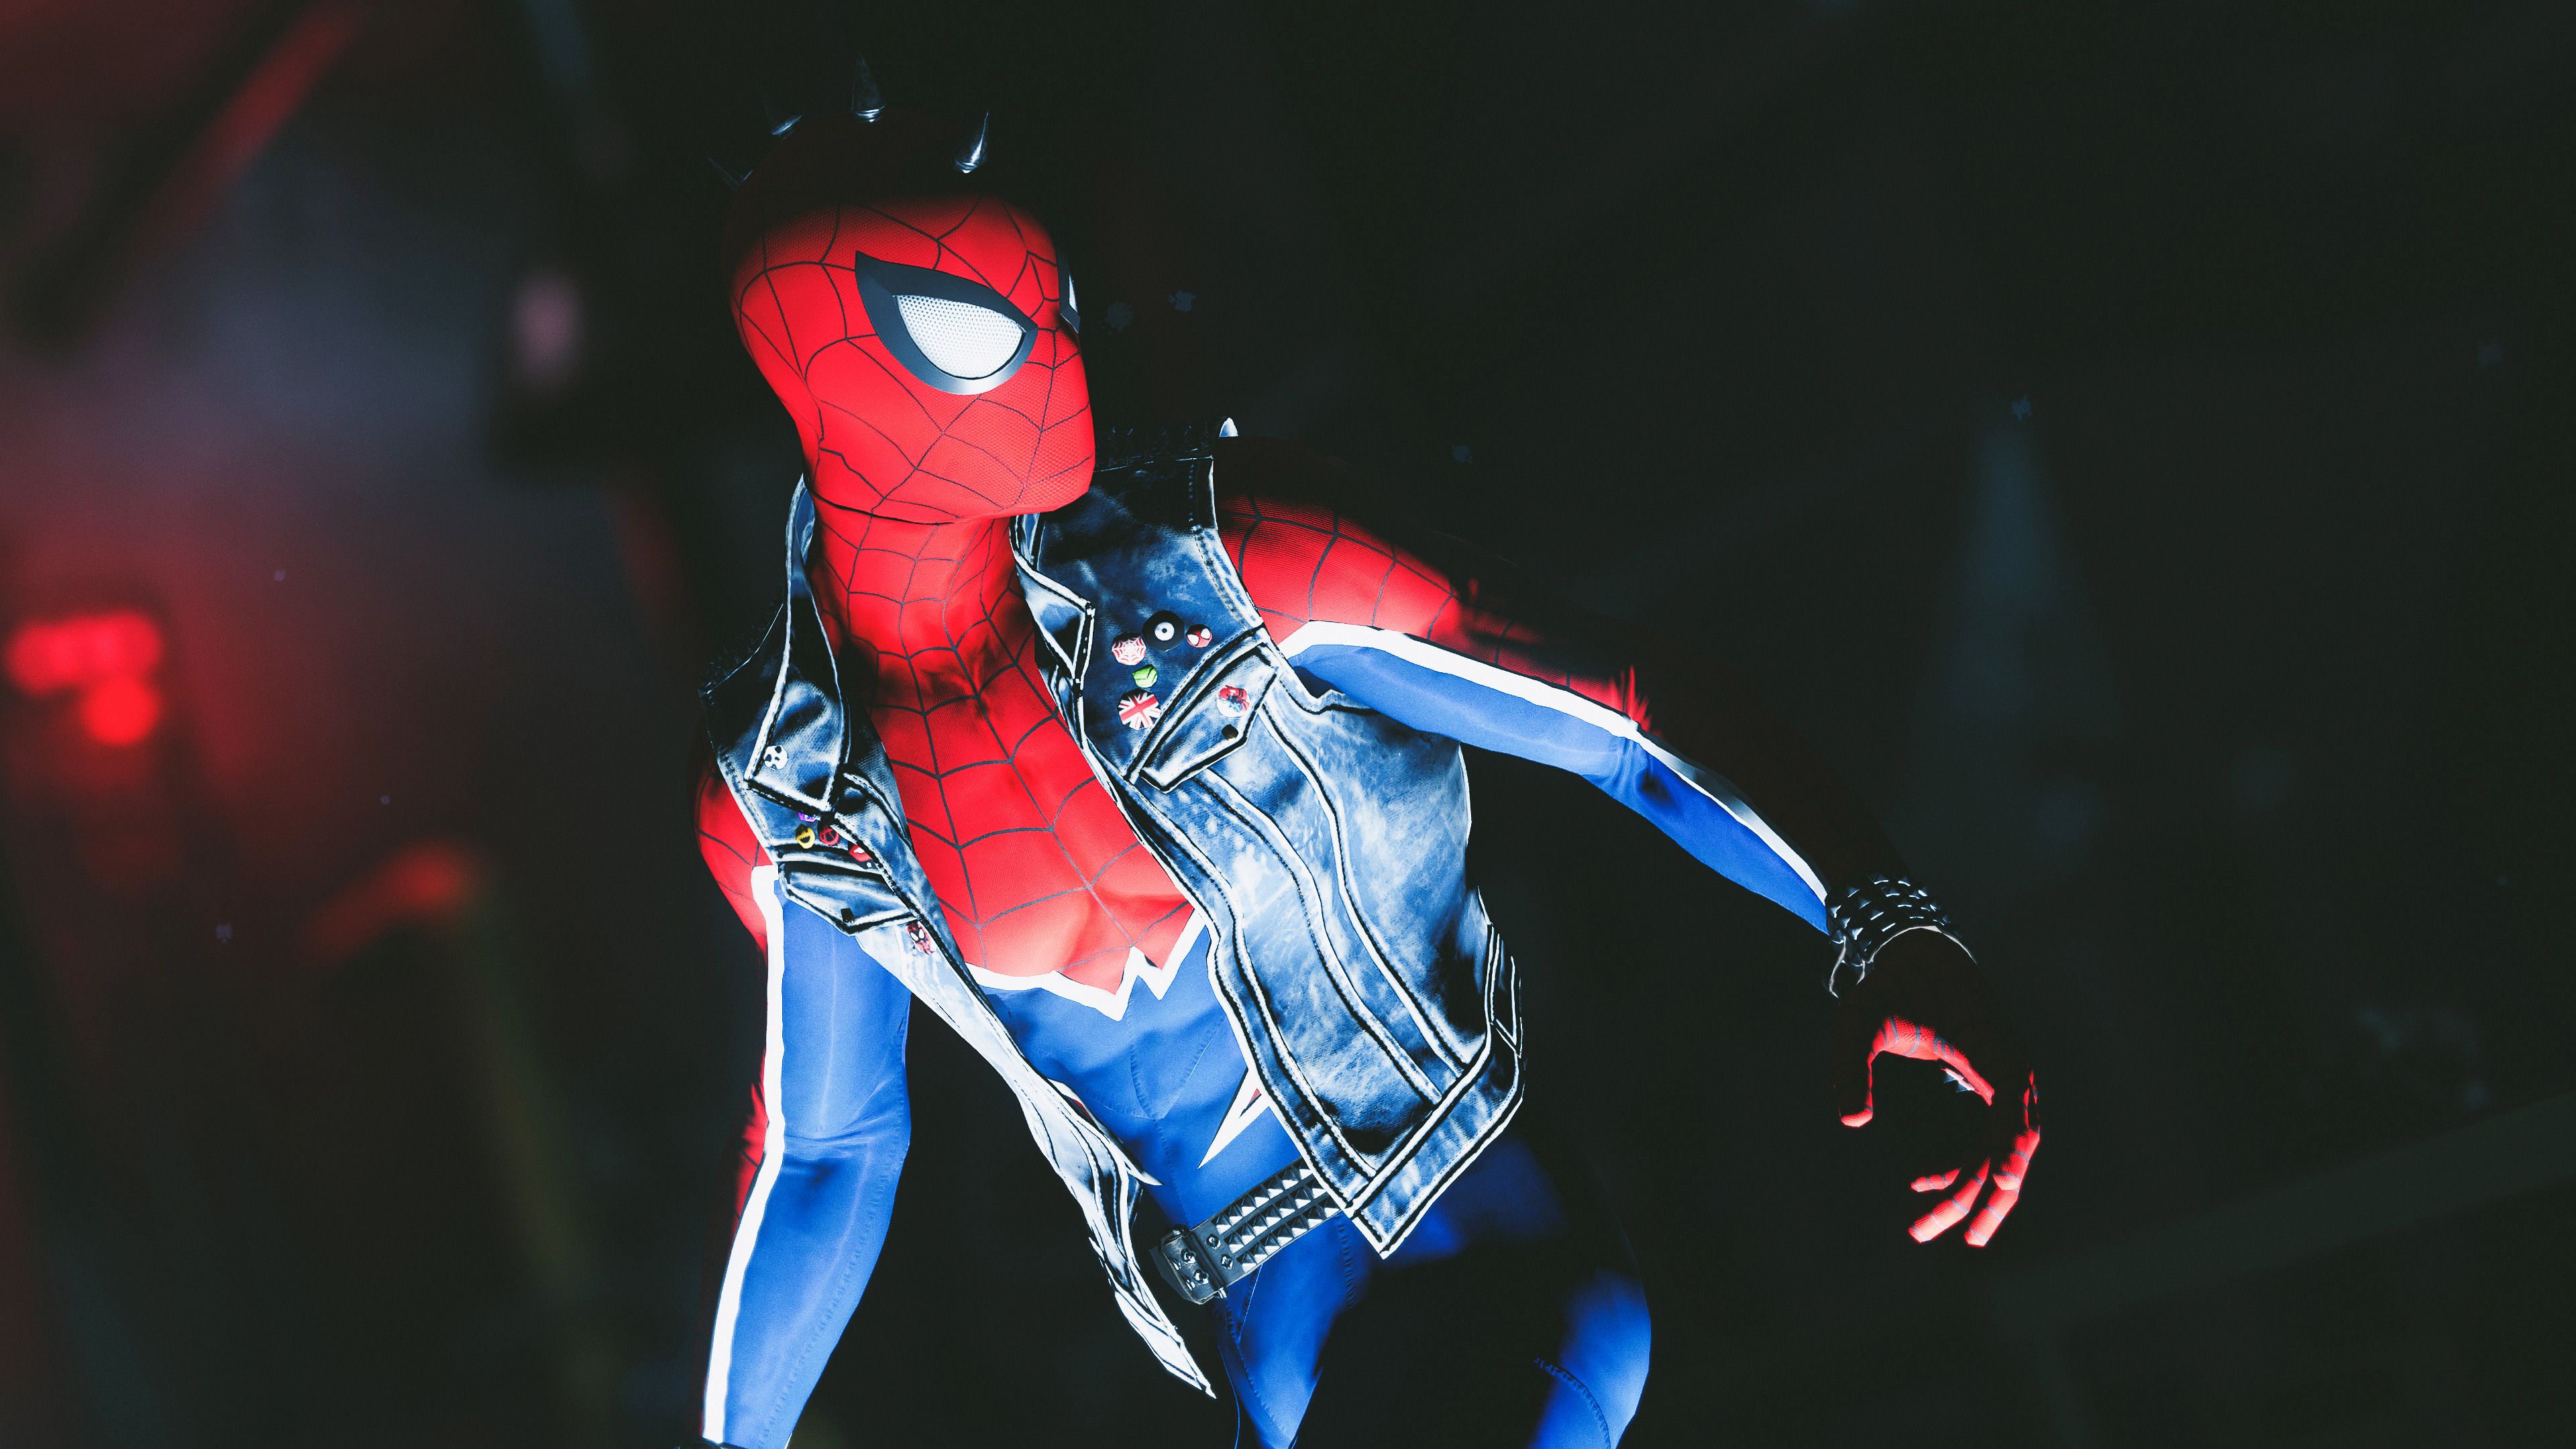 Spider Punk Spider Man PS4 4K